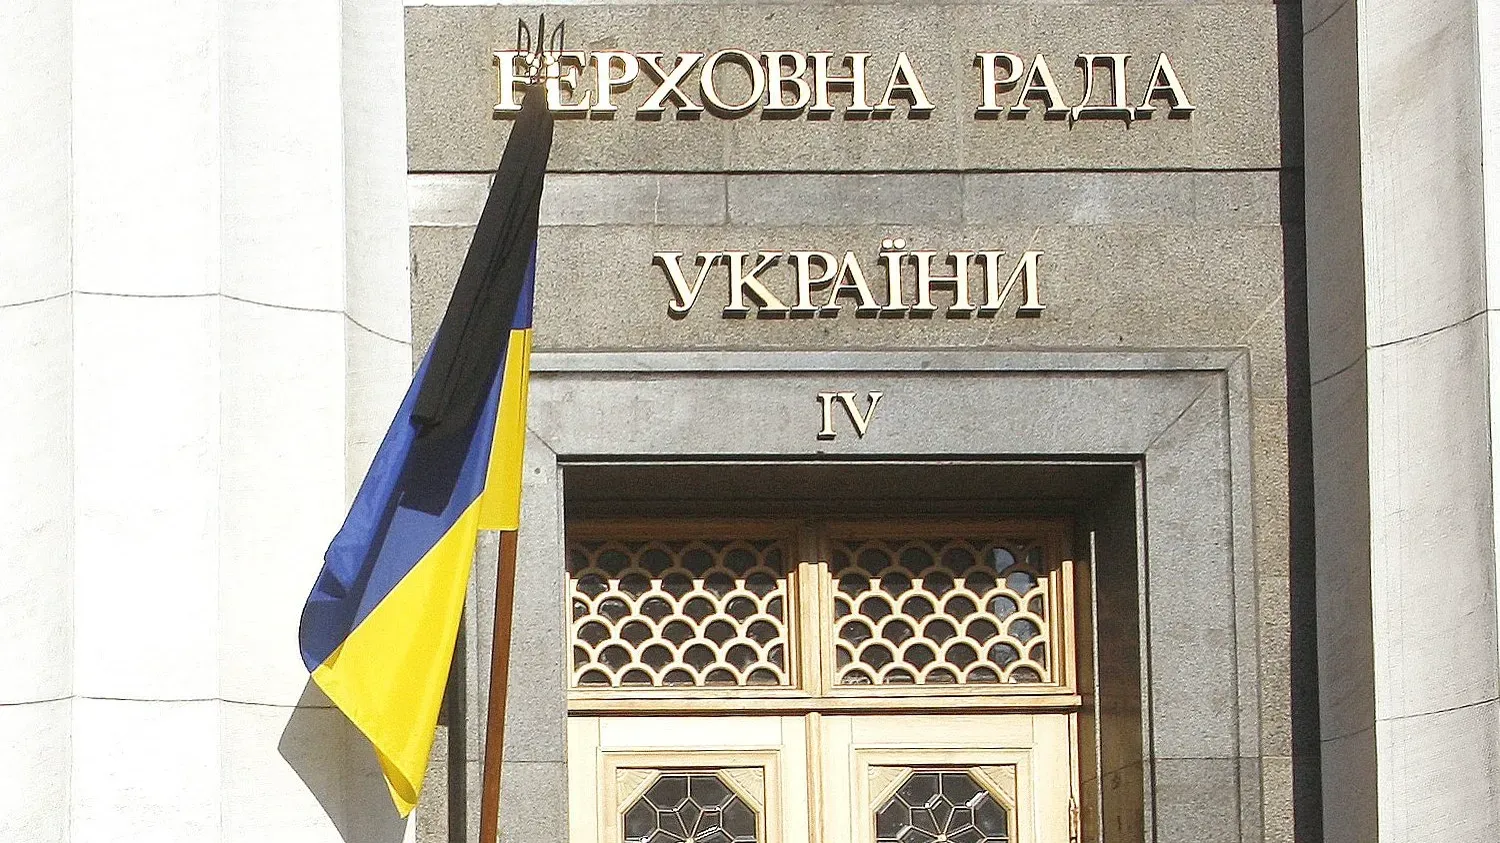 Депутат из Украины Арахамия заявил о приближении парламентского кризиса в его стране